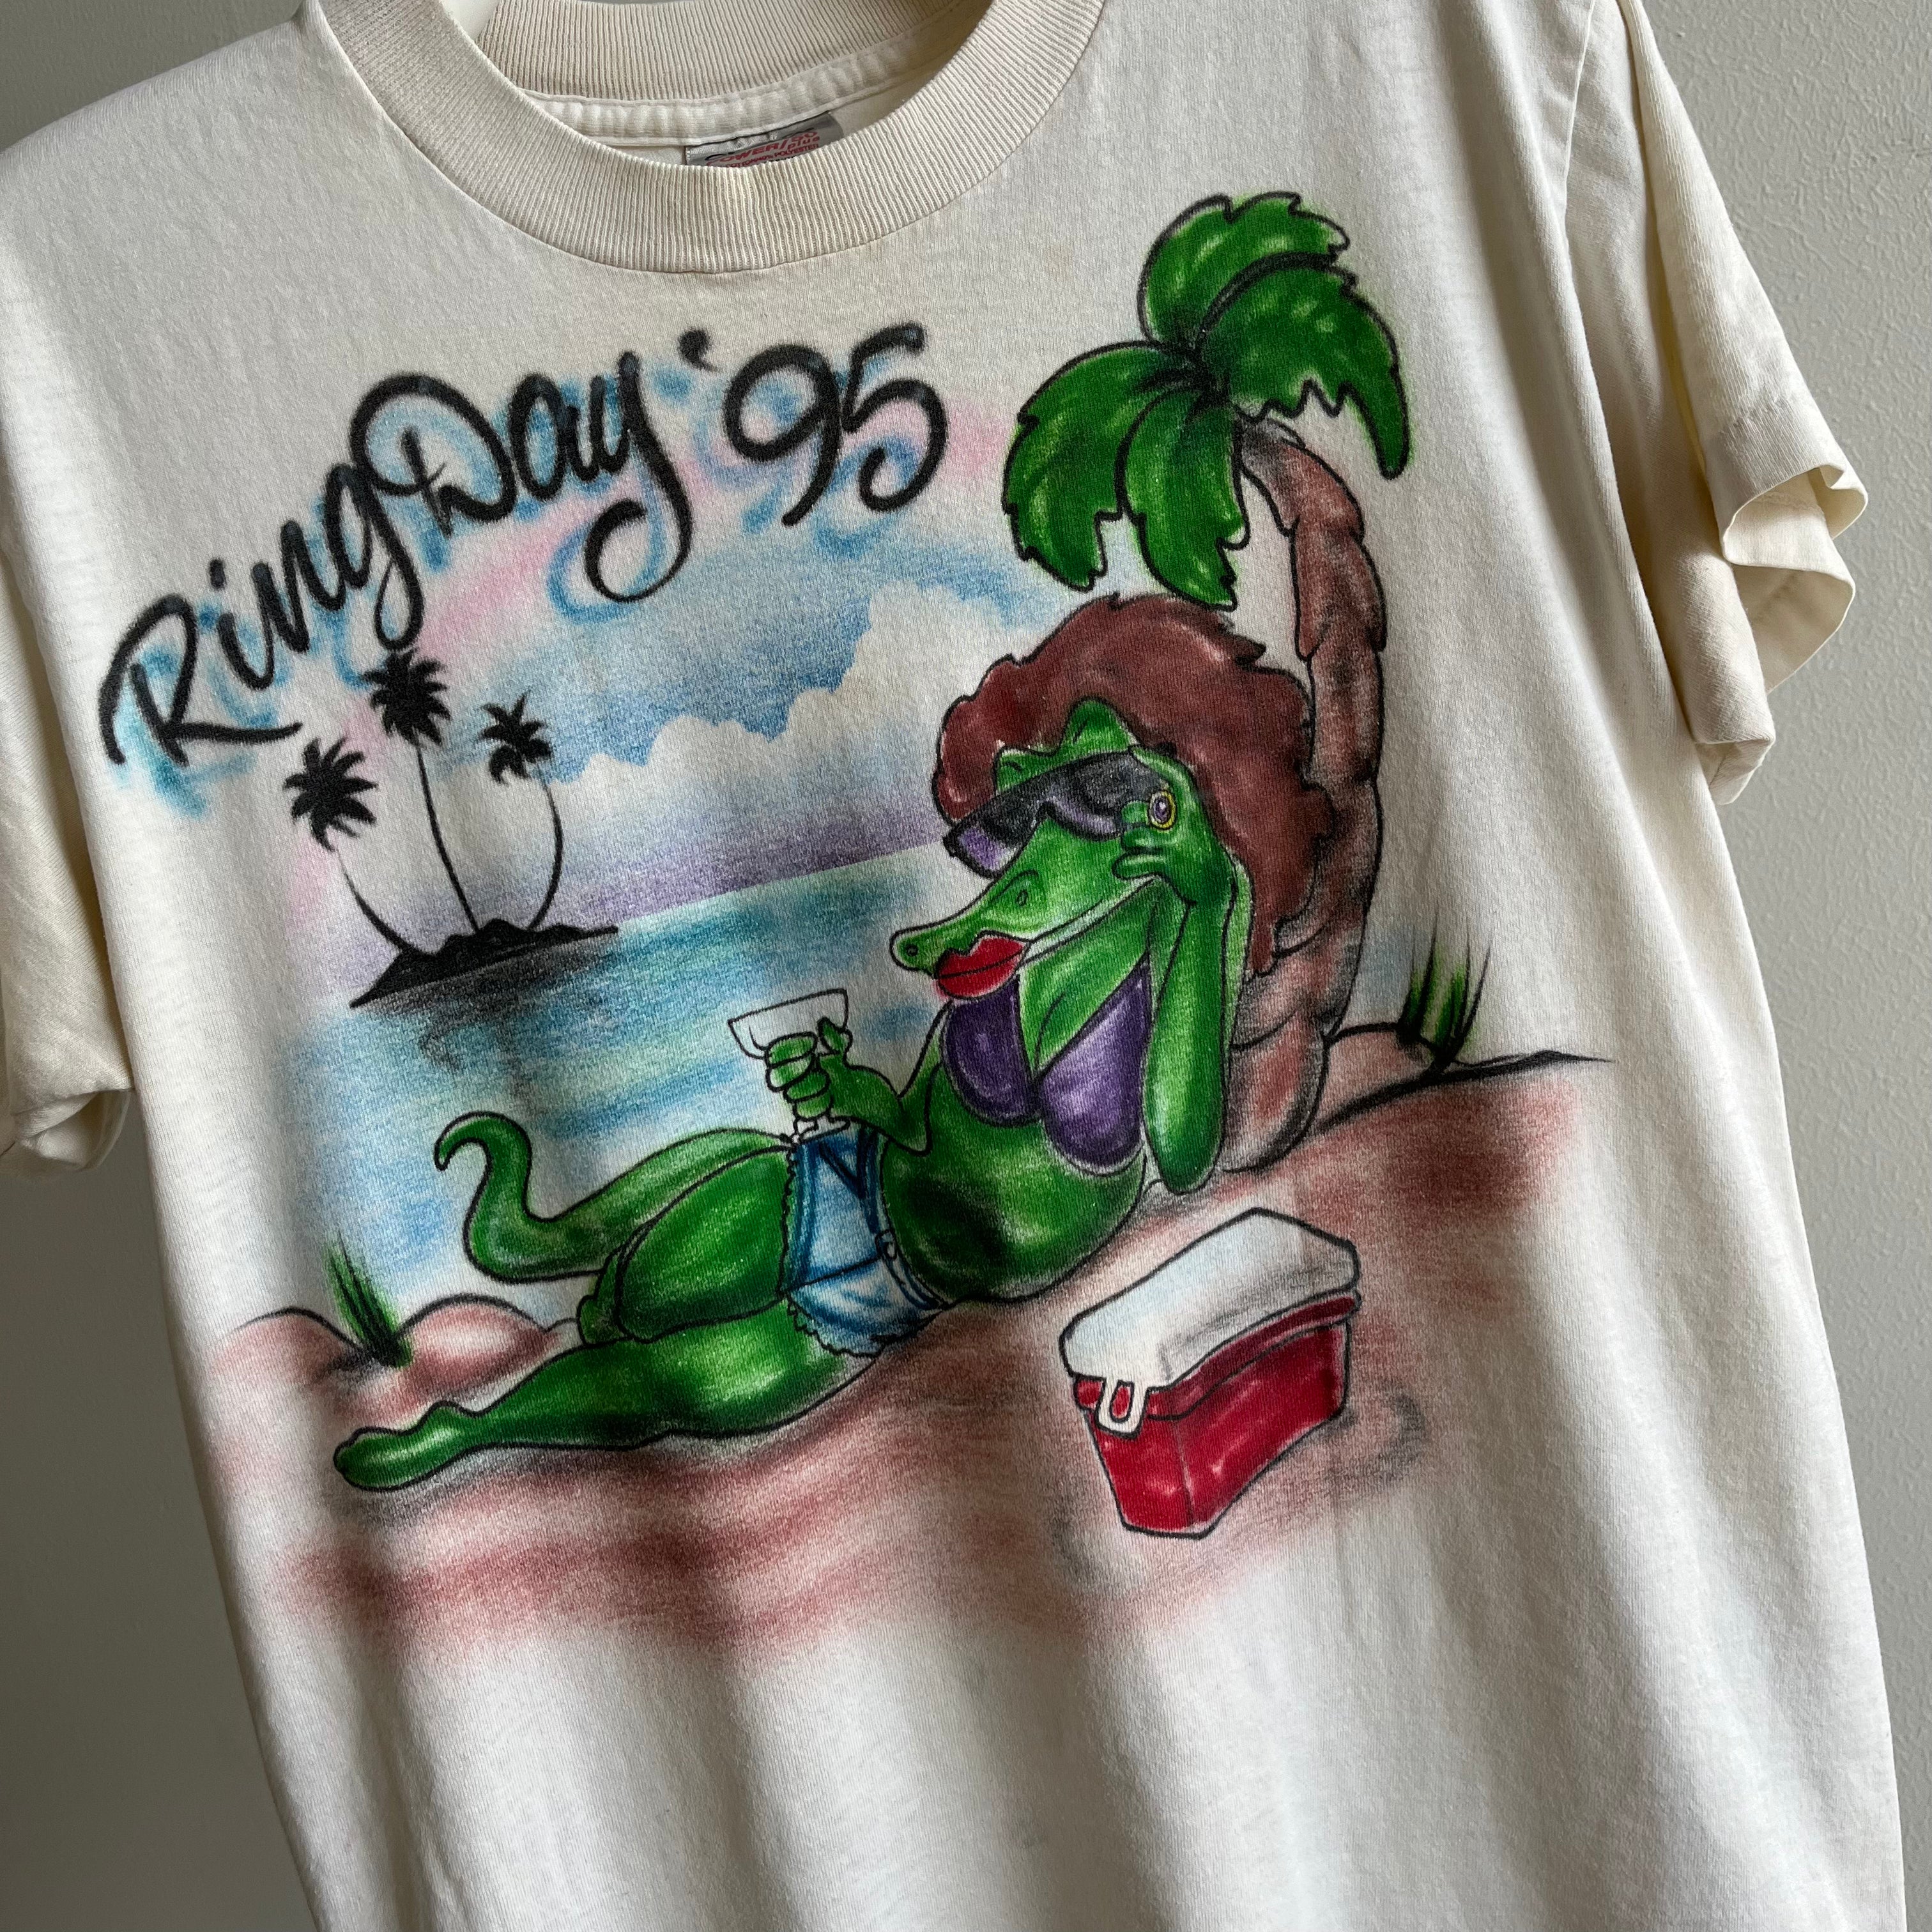 1995 RIng Day Gator en bikini avec un tournesol et 